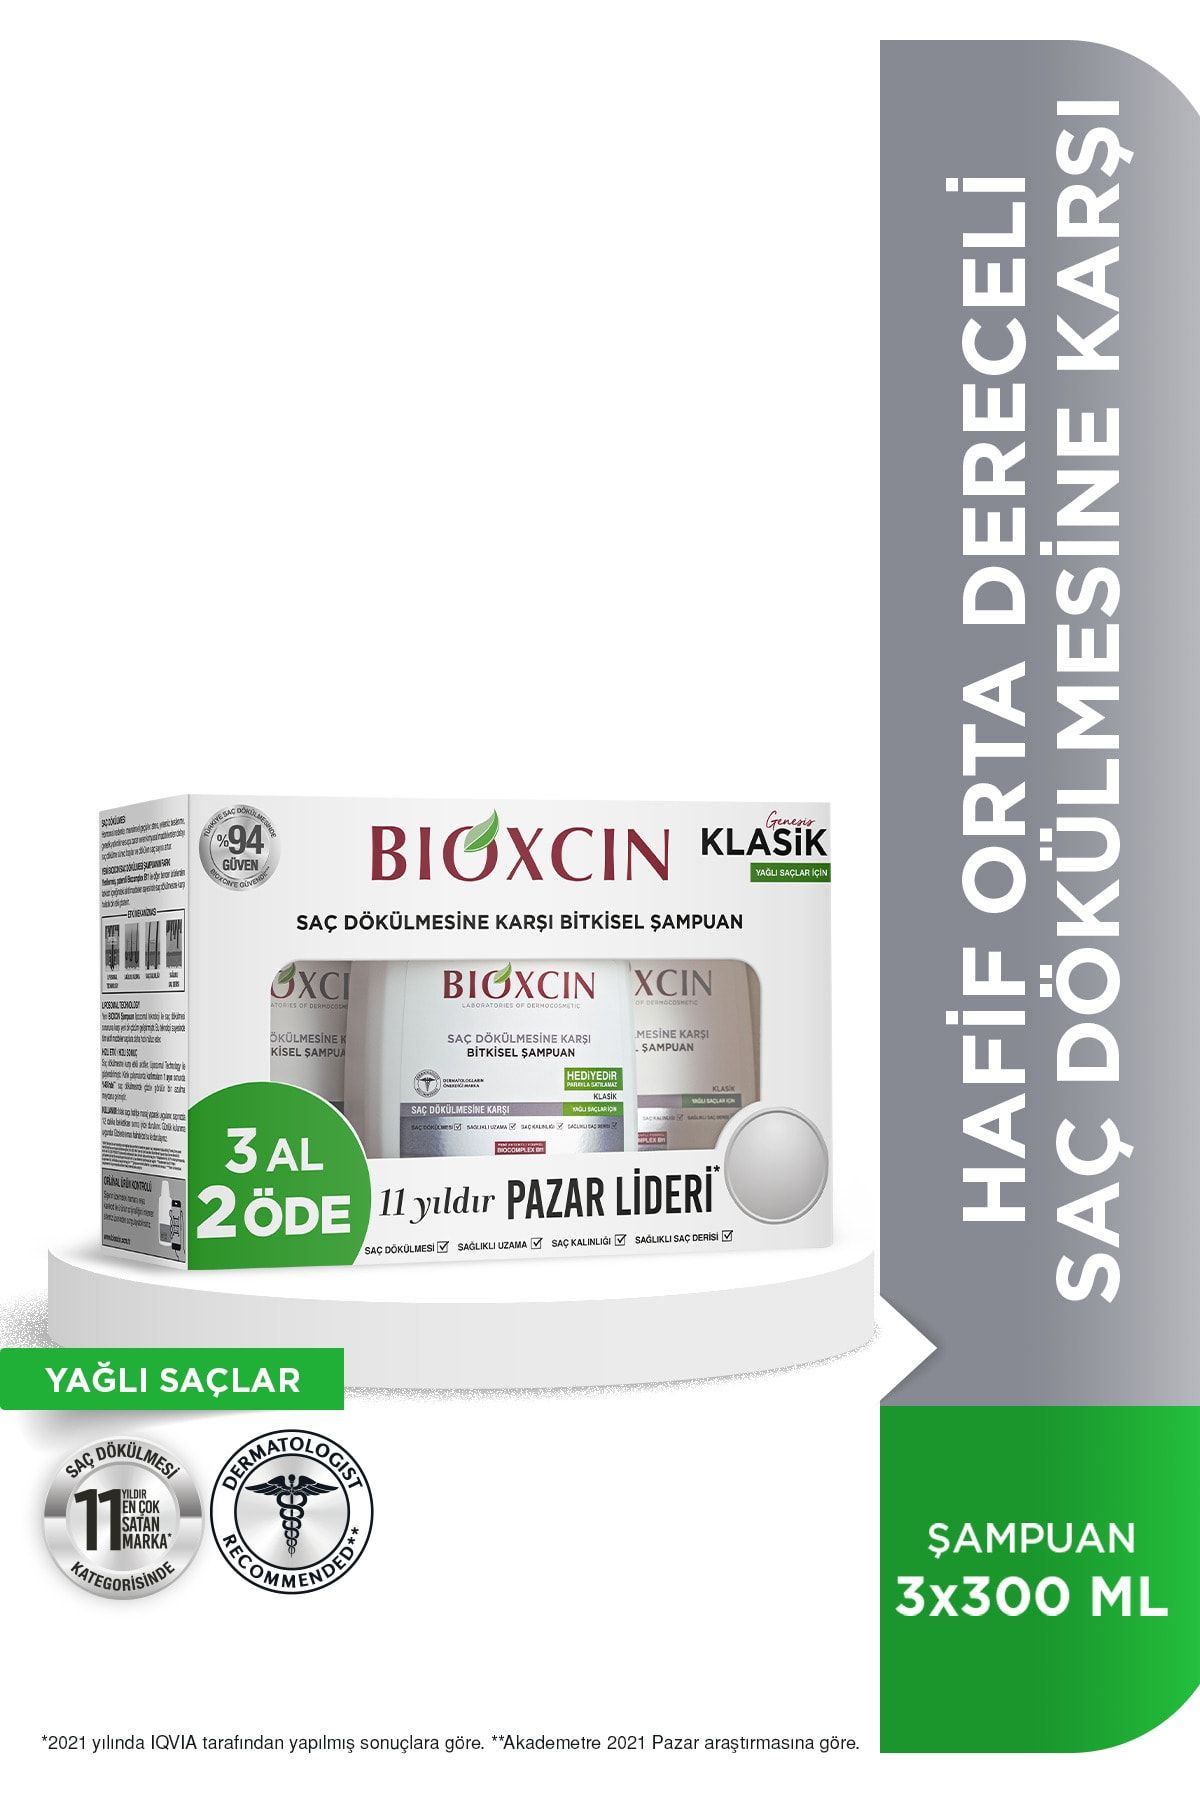 Bioxcin Genesis 3 Al 2 Öde Yağlı Saçlar Için Şampuan 3*300ml